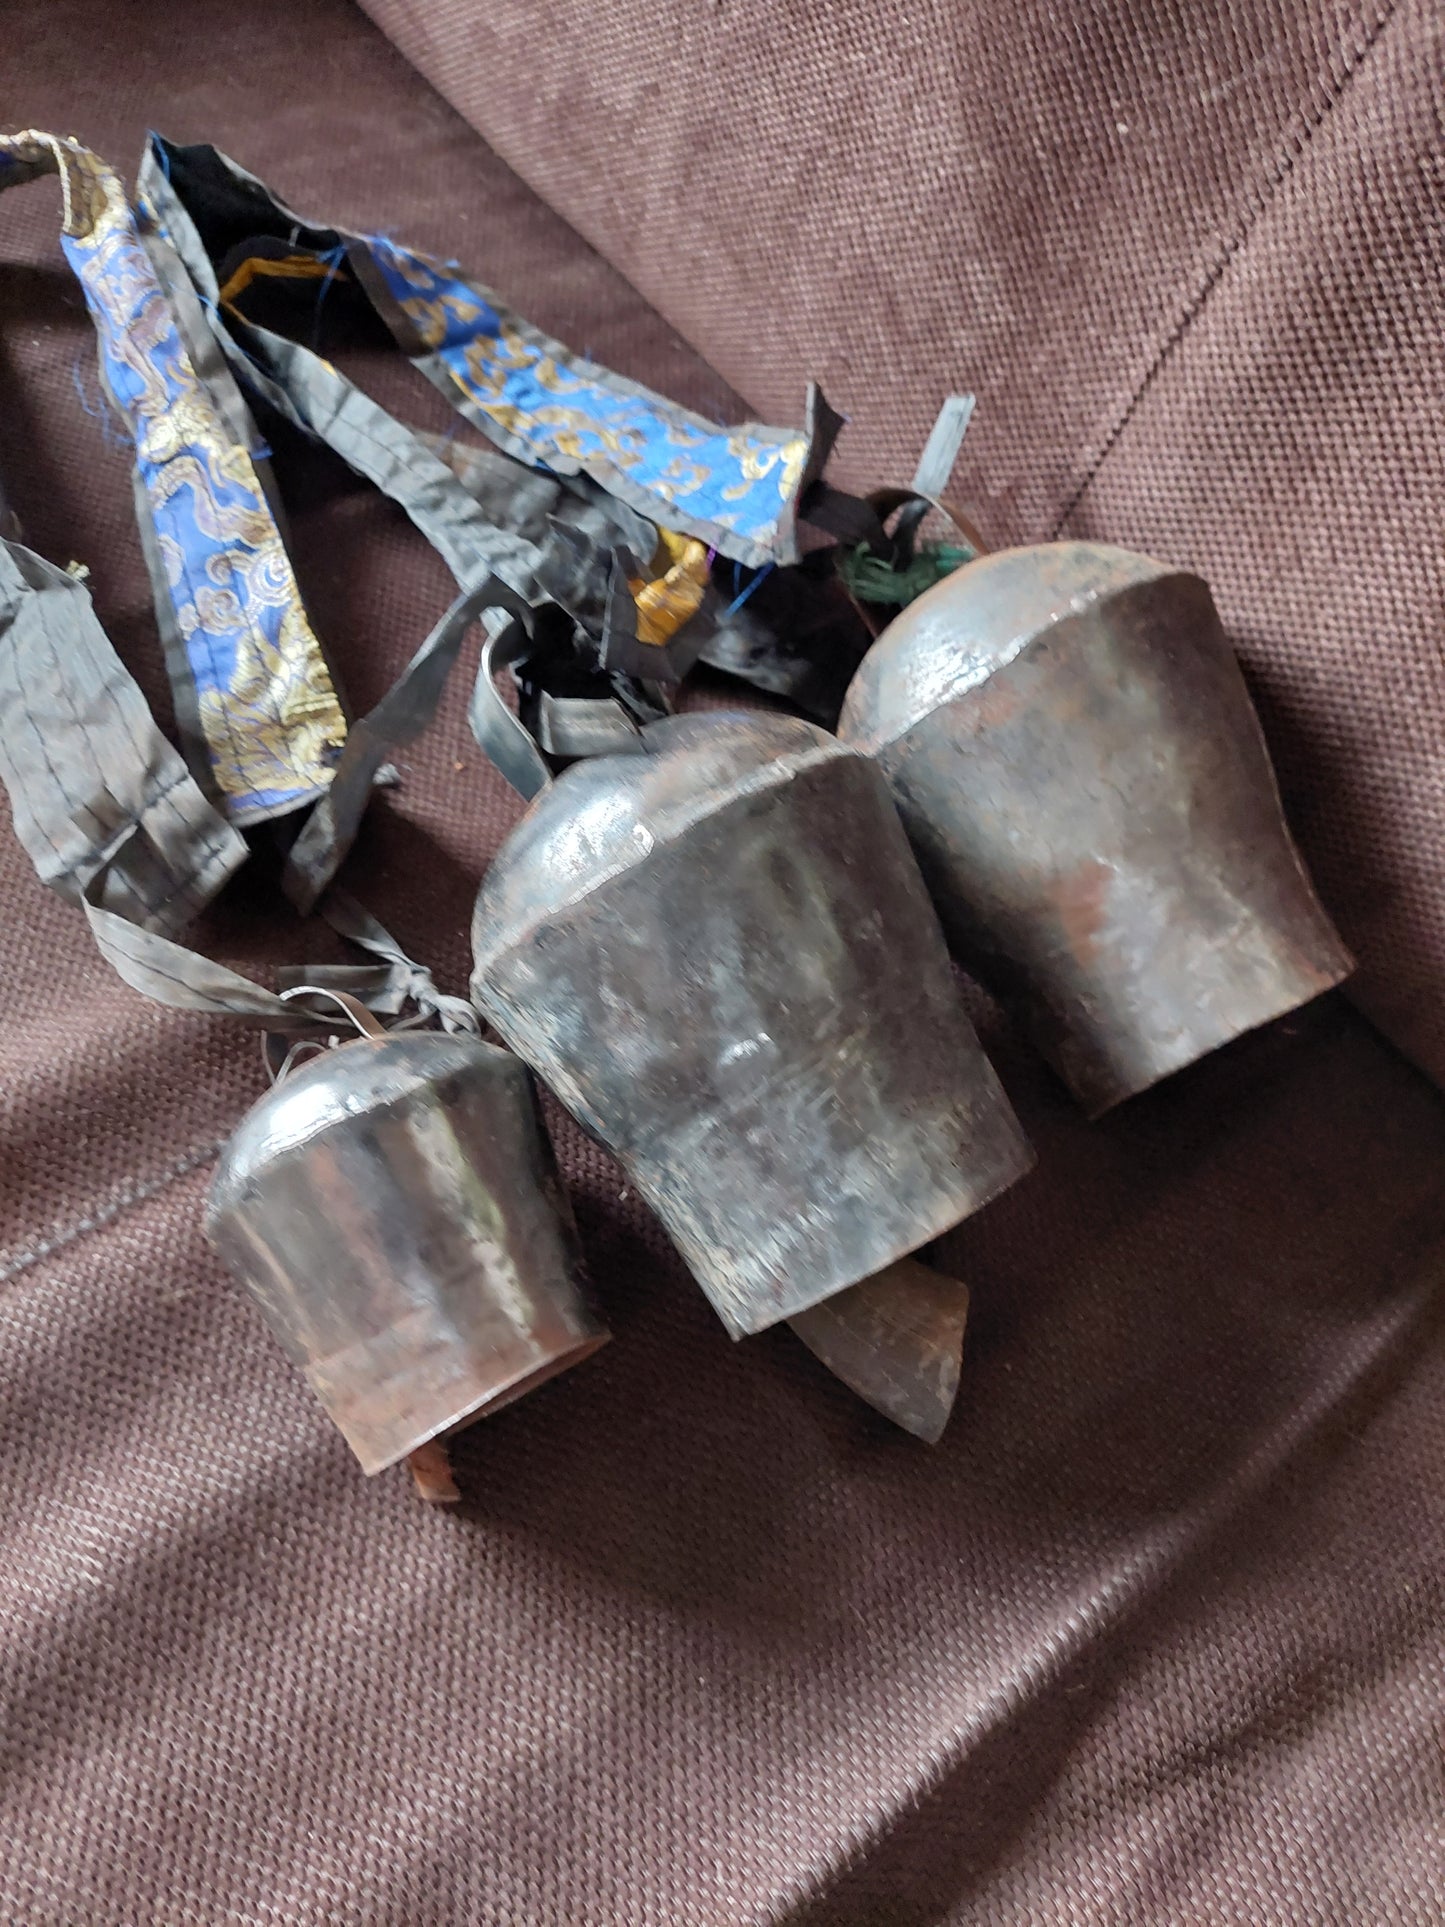 Vintage Nepalese yak bells